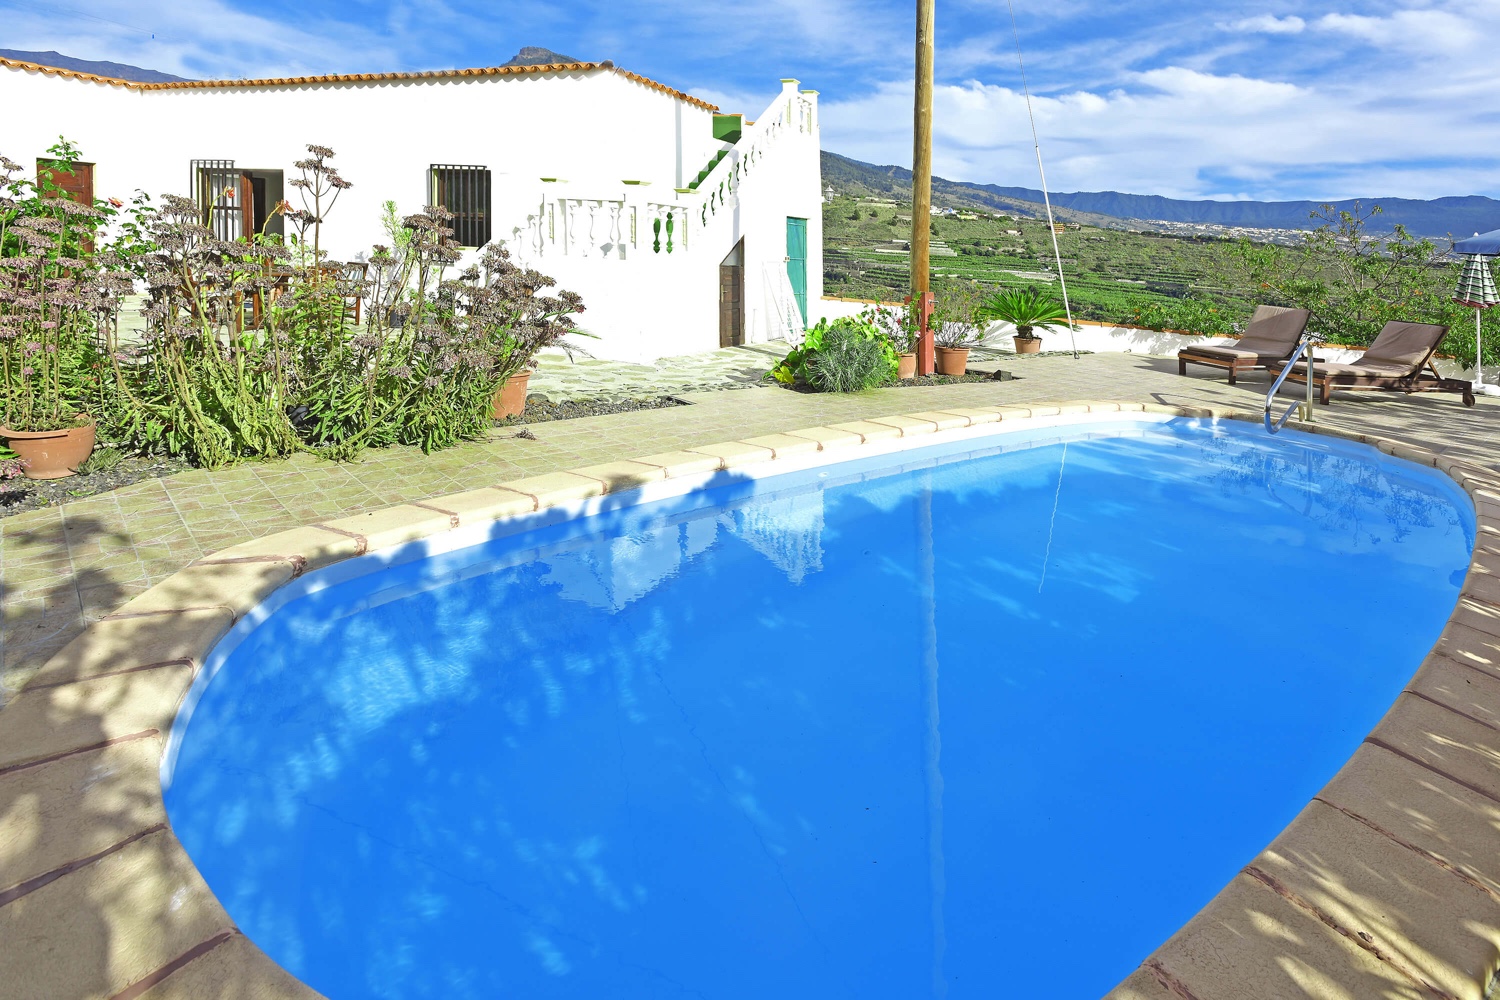 Casa de vacaciones en Tijarafe con una terraza de piscina grande para relajarse